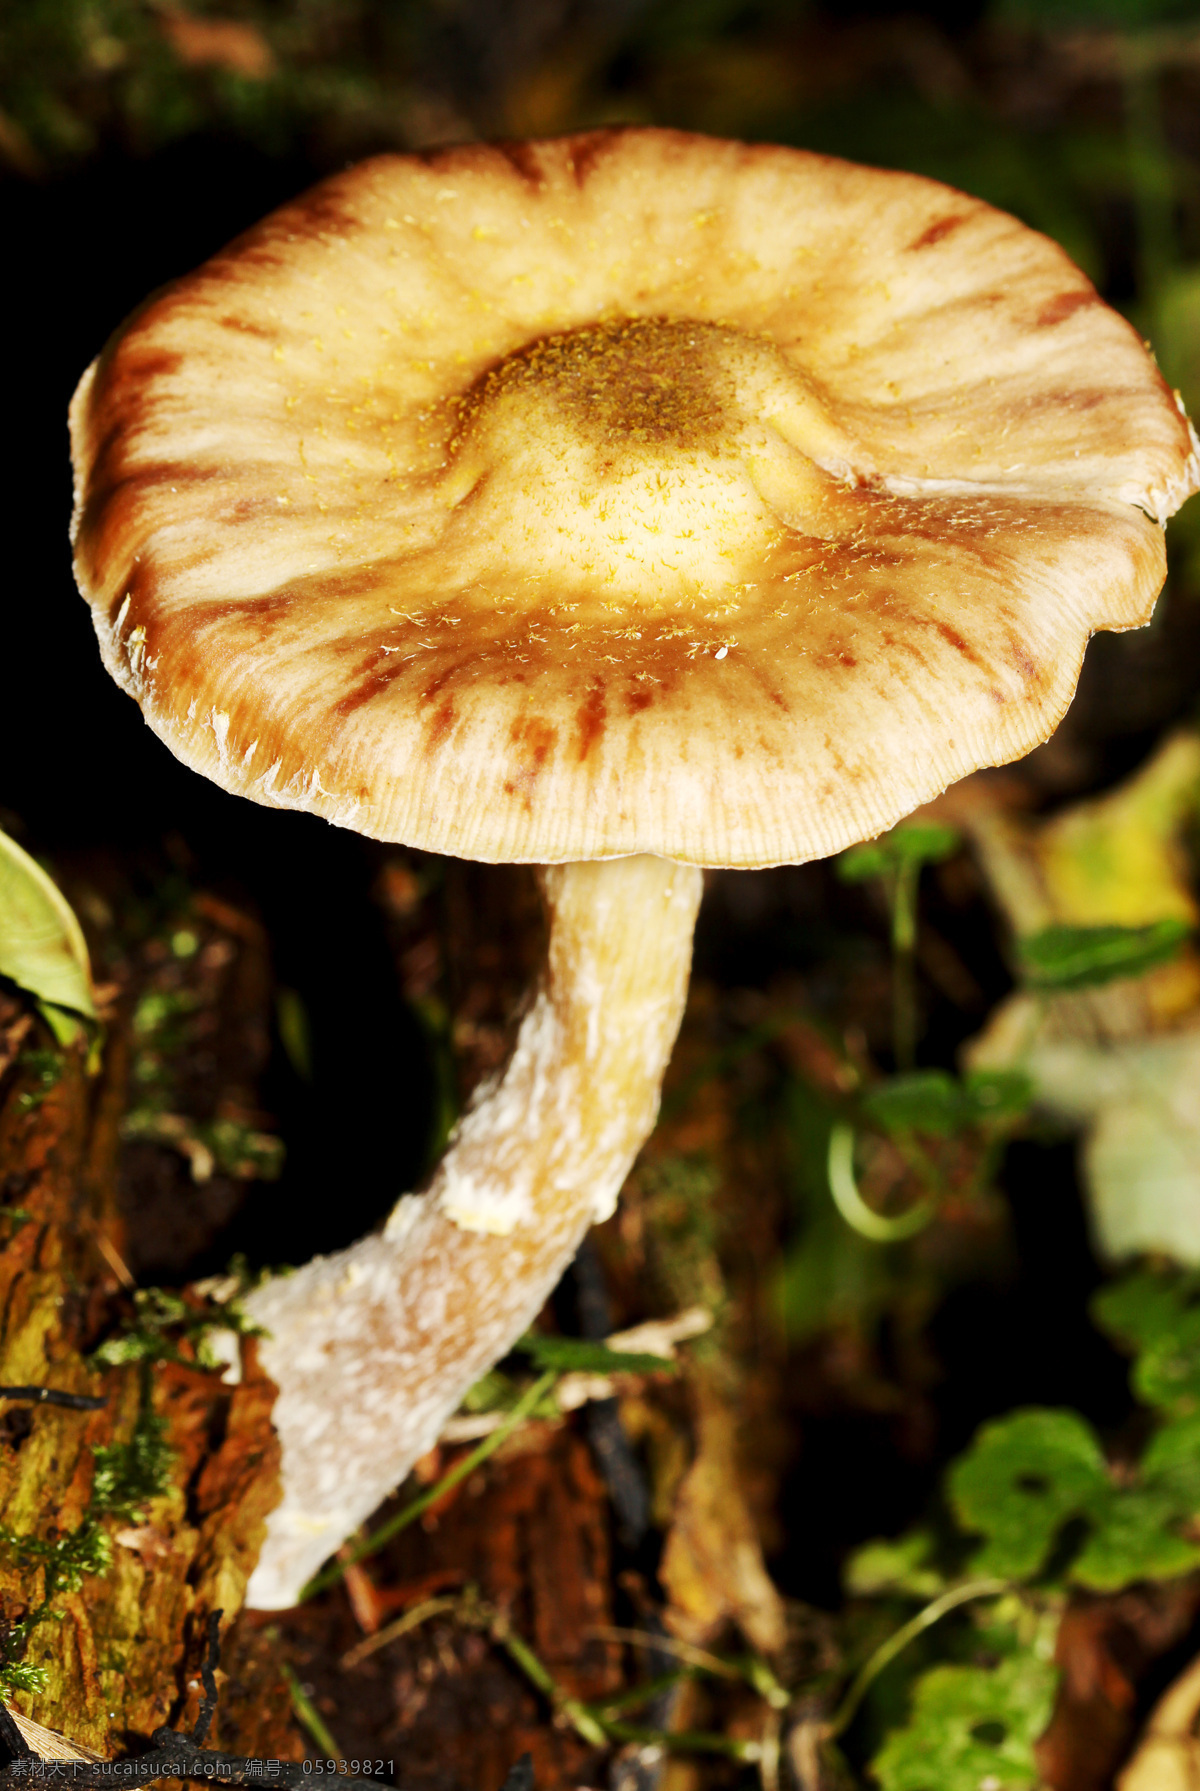 蘑菇菌类植物 蘑菇 菌类植物 菌类生物 蘑菇摄影 其他类别 生活百科 黑色